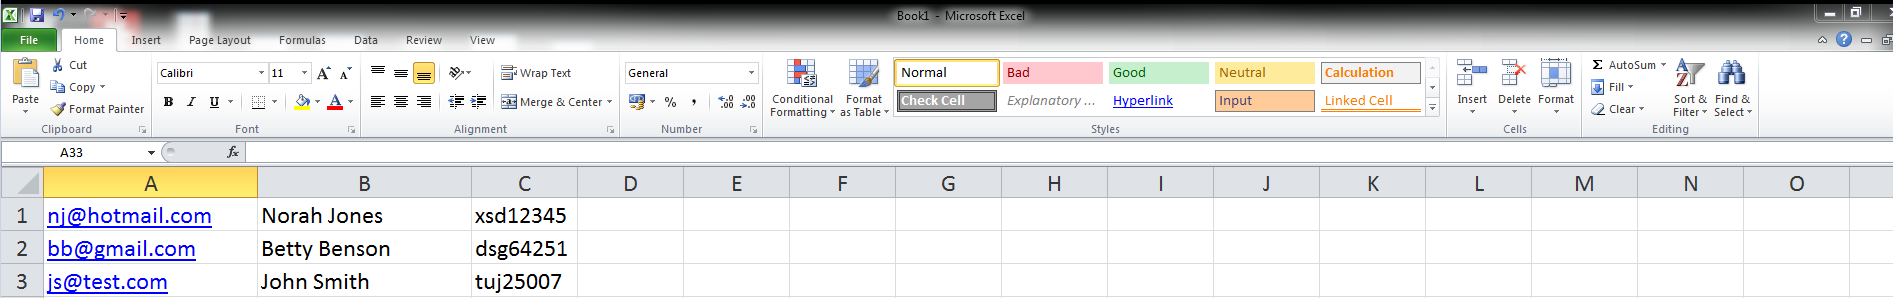 Microsoft excel example spreadsheet